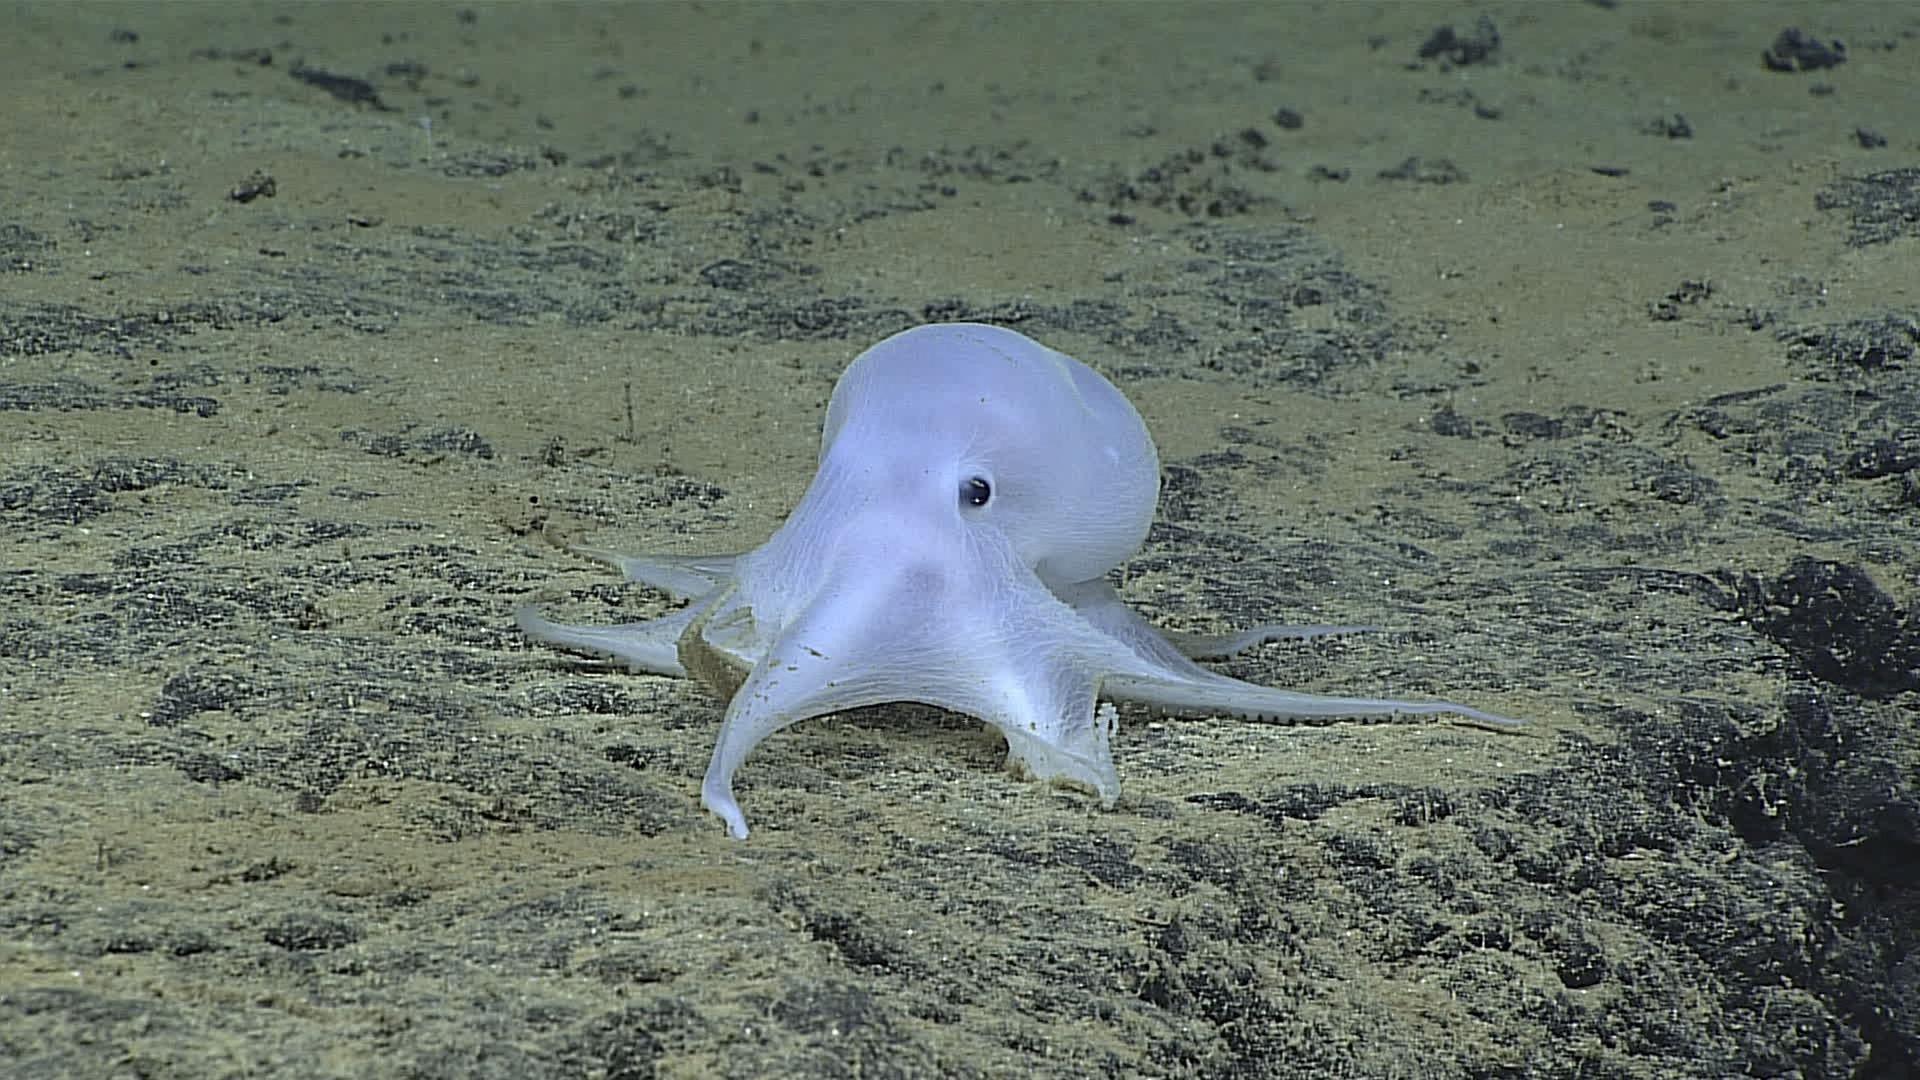 An incirrate octopod